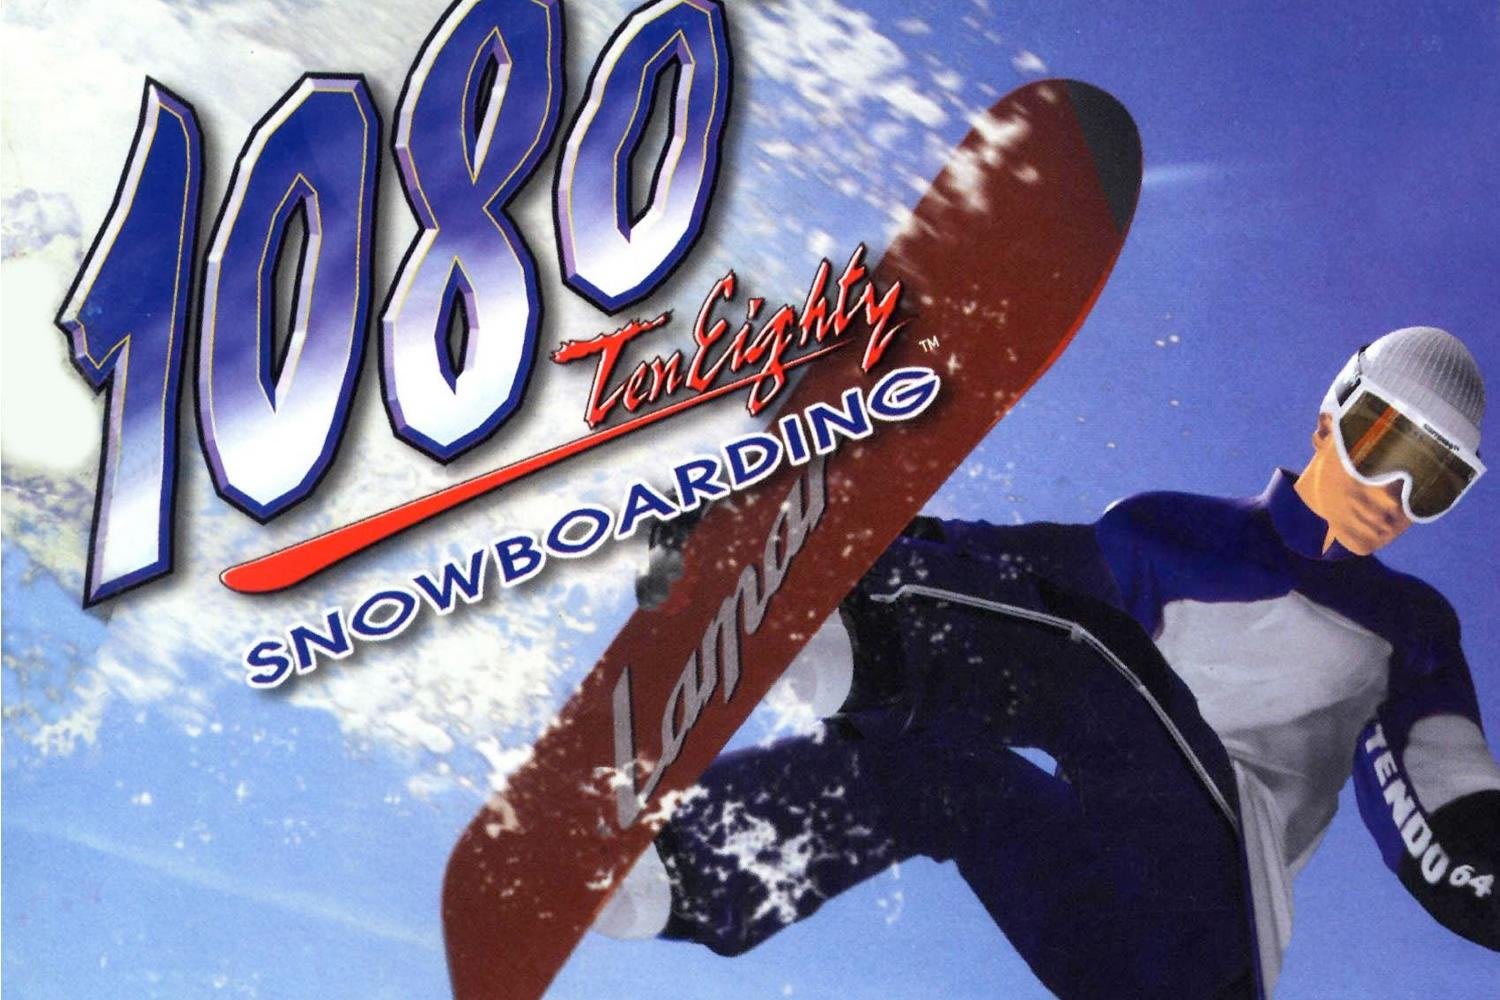 1080 snowboarding game